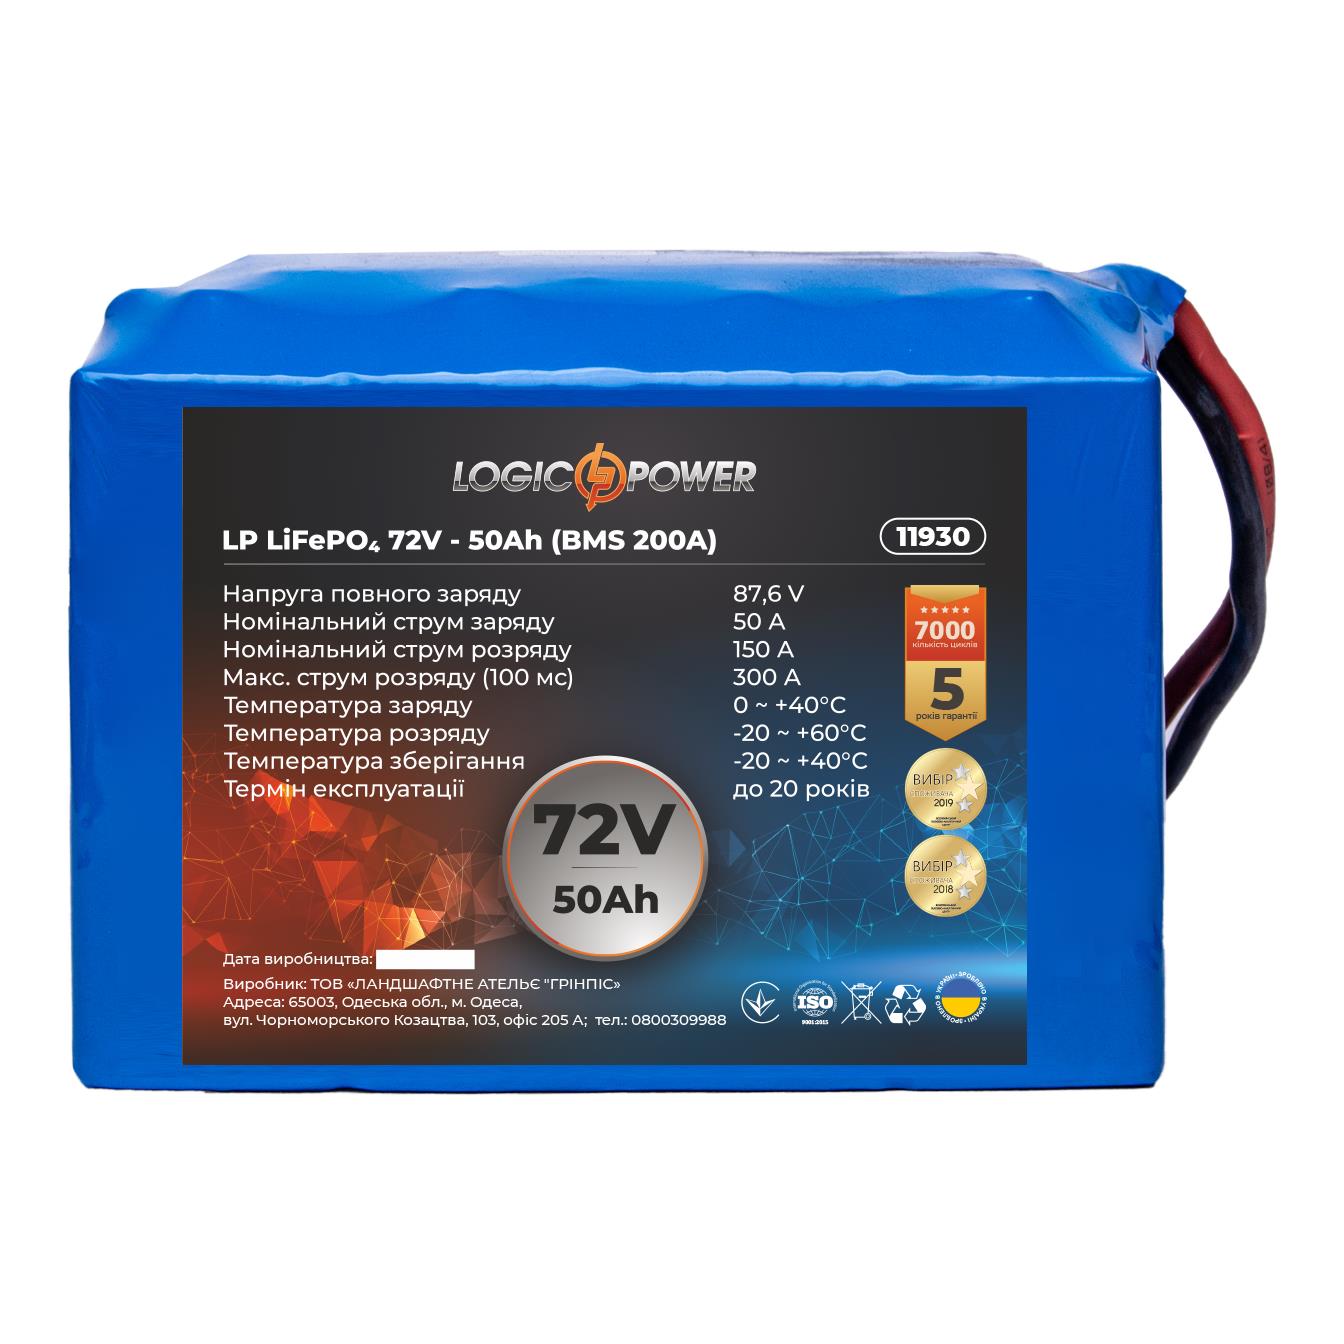 Відгуки акумулятор літій-залізо-фосфатний LogicPower LP LiFePO4 72V - 50 Ah (BMS 200A) (11930)